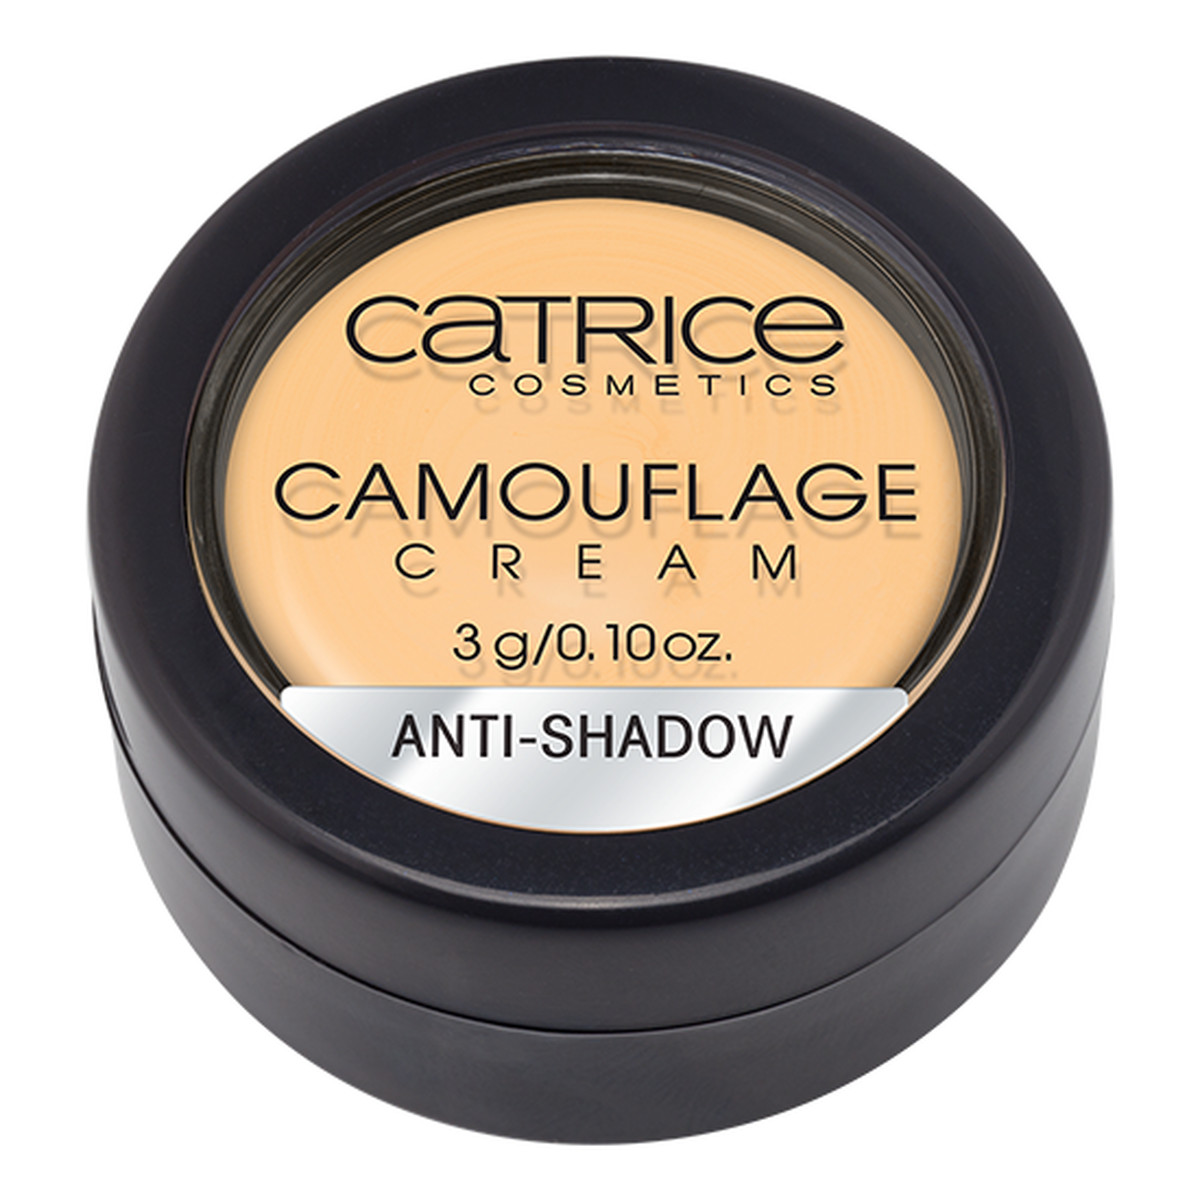 Catrice Camouflage Anti-Shadow Korektor W Kremie 3g